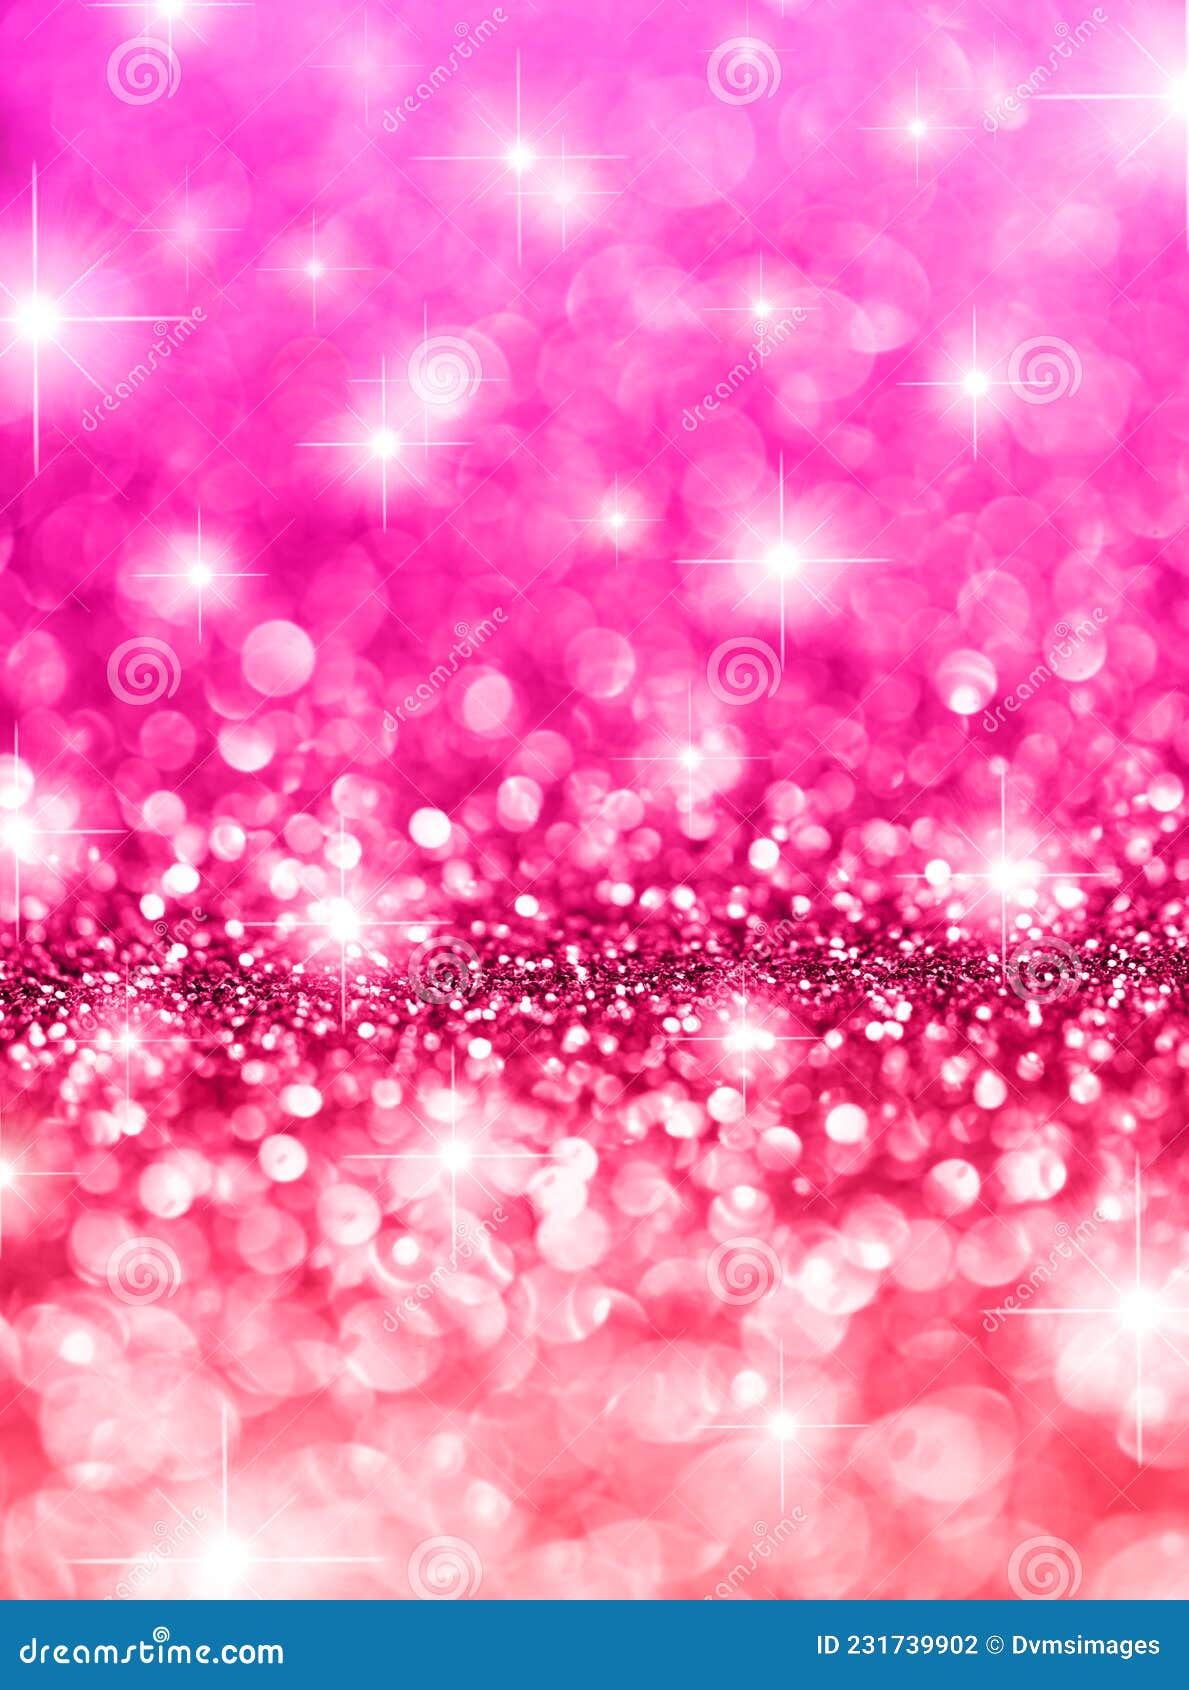 Sắm cho mình một nền chụp ảnh hạt nhũ hồng Bokeh Stars tràn đầy tinh tế và quyến rũ. Với những hiệu ứng ánh sáng đầy màu sắc và lấp lánh hoàn hảo, không gian của bạn sẽ trở nên đẹp hơn, thu hút hơn, tạo sự bắt mắt vô cùng, đưa bạn đến với một thế giới thần tiên và lãng mạn.